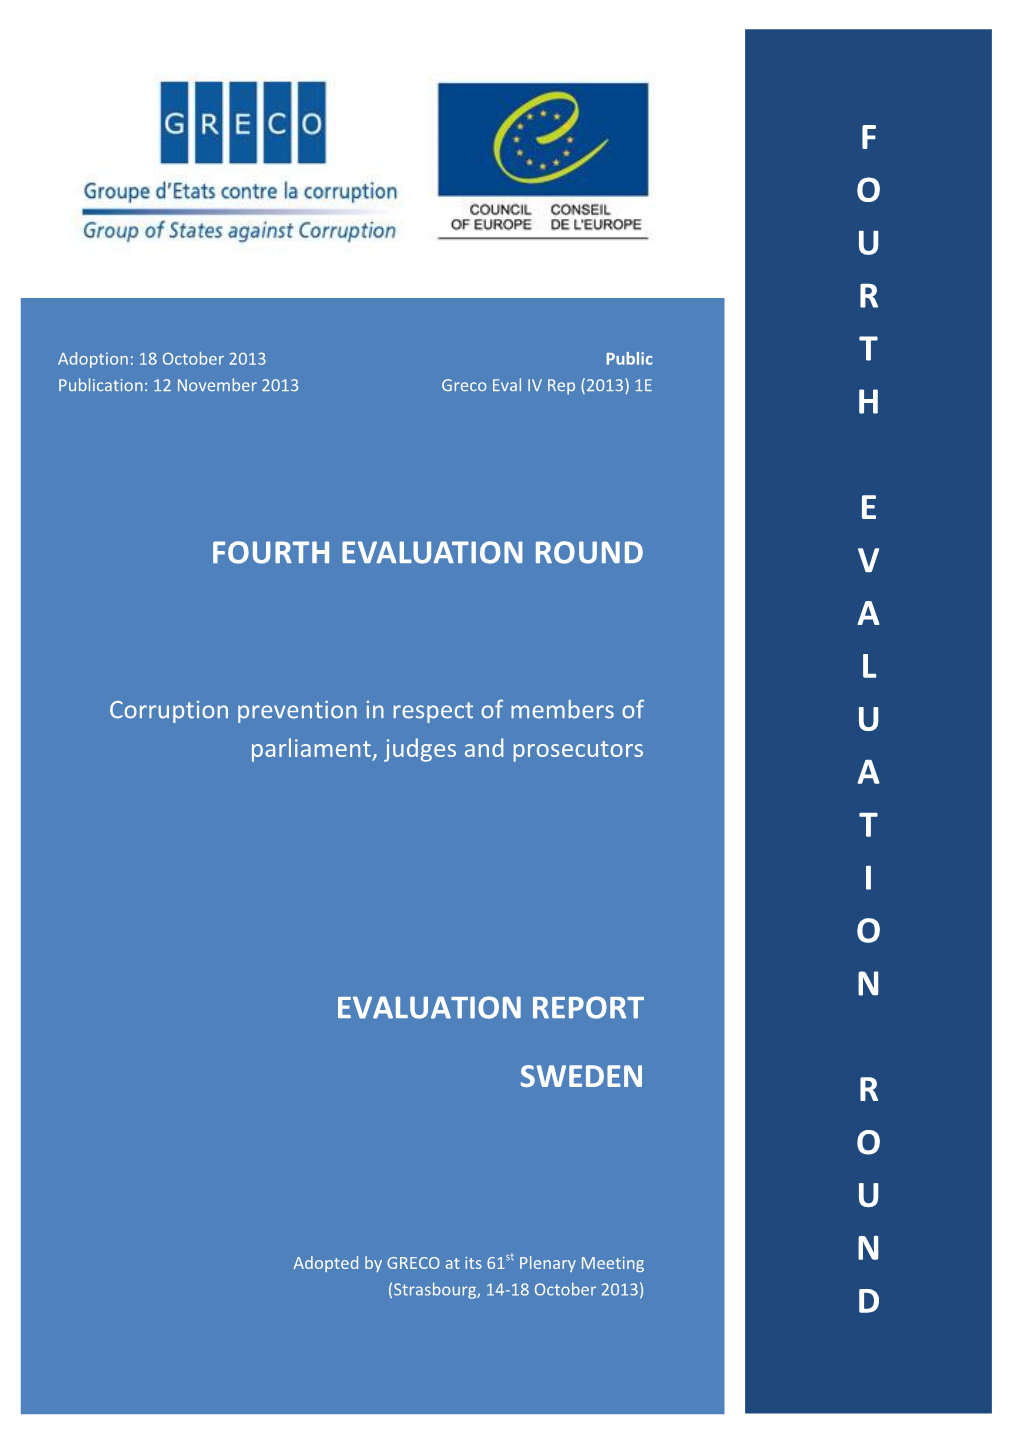 Fourth Evaluation Round SWEDEN